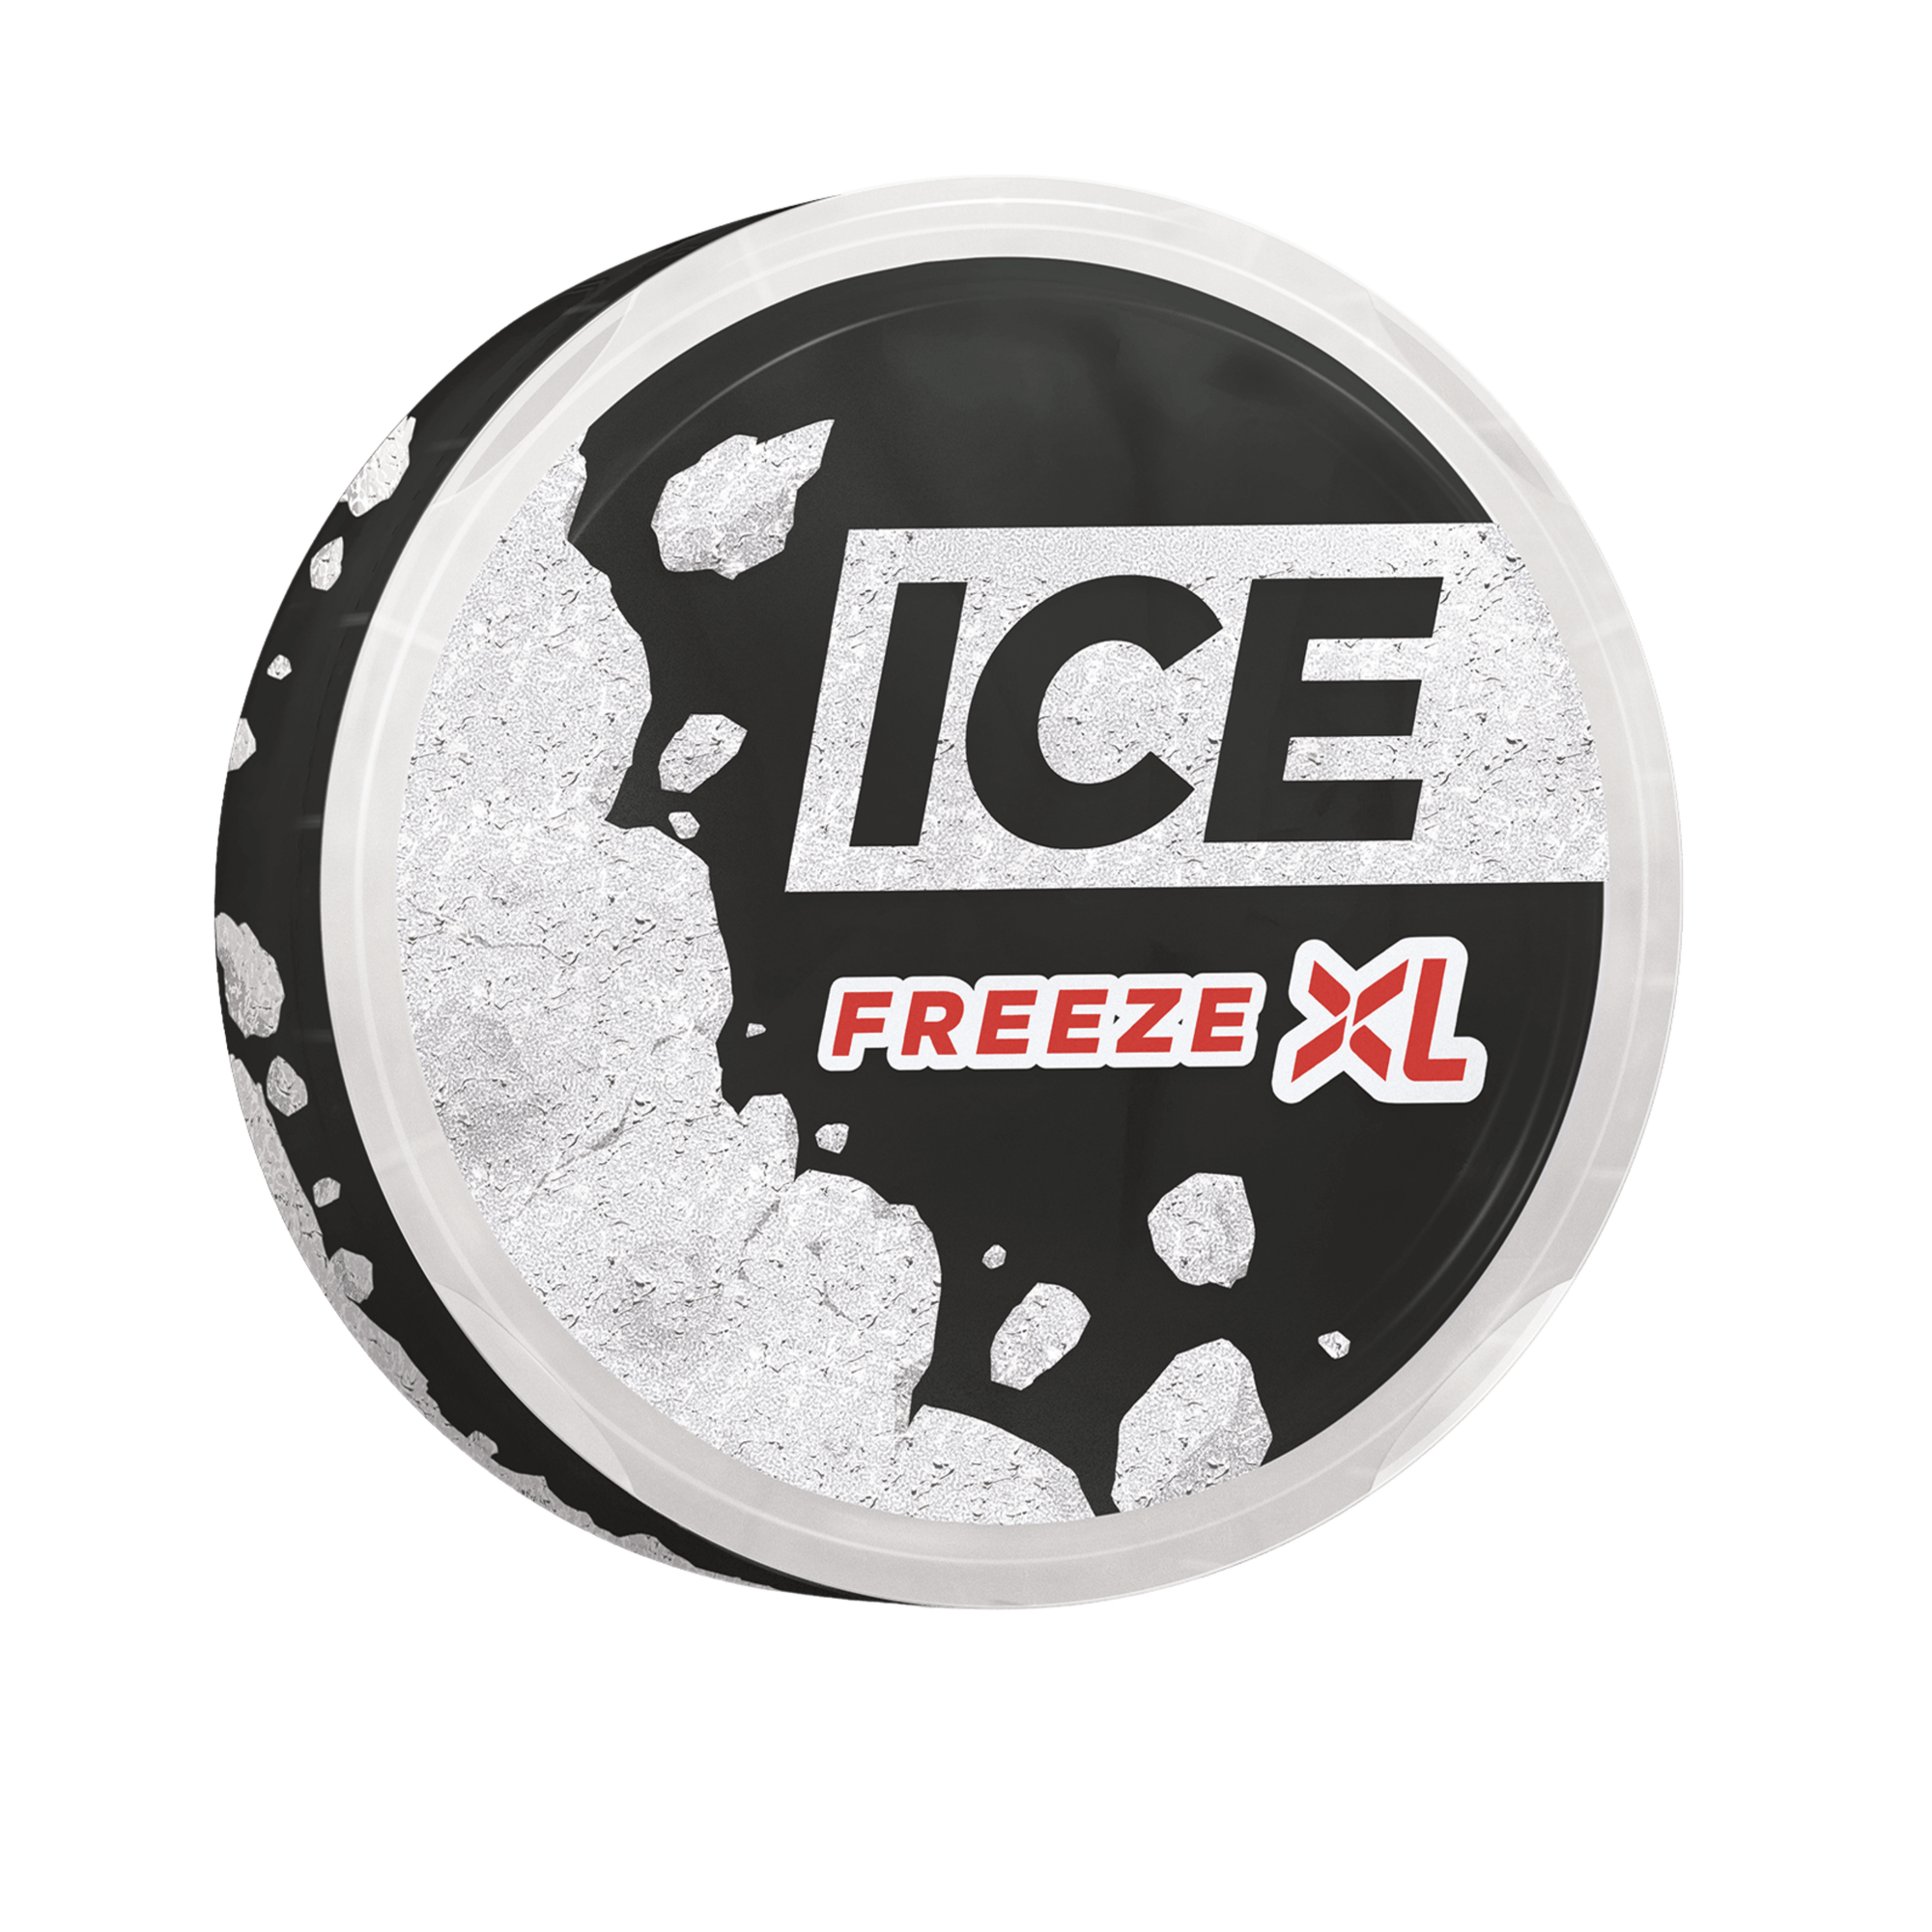 ICE FREEZE XL - Nammi.net